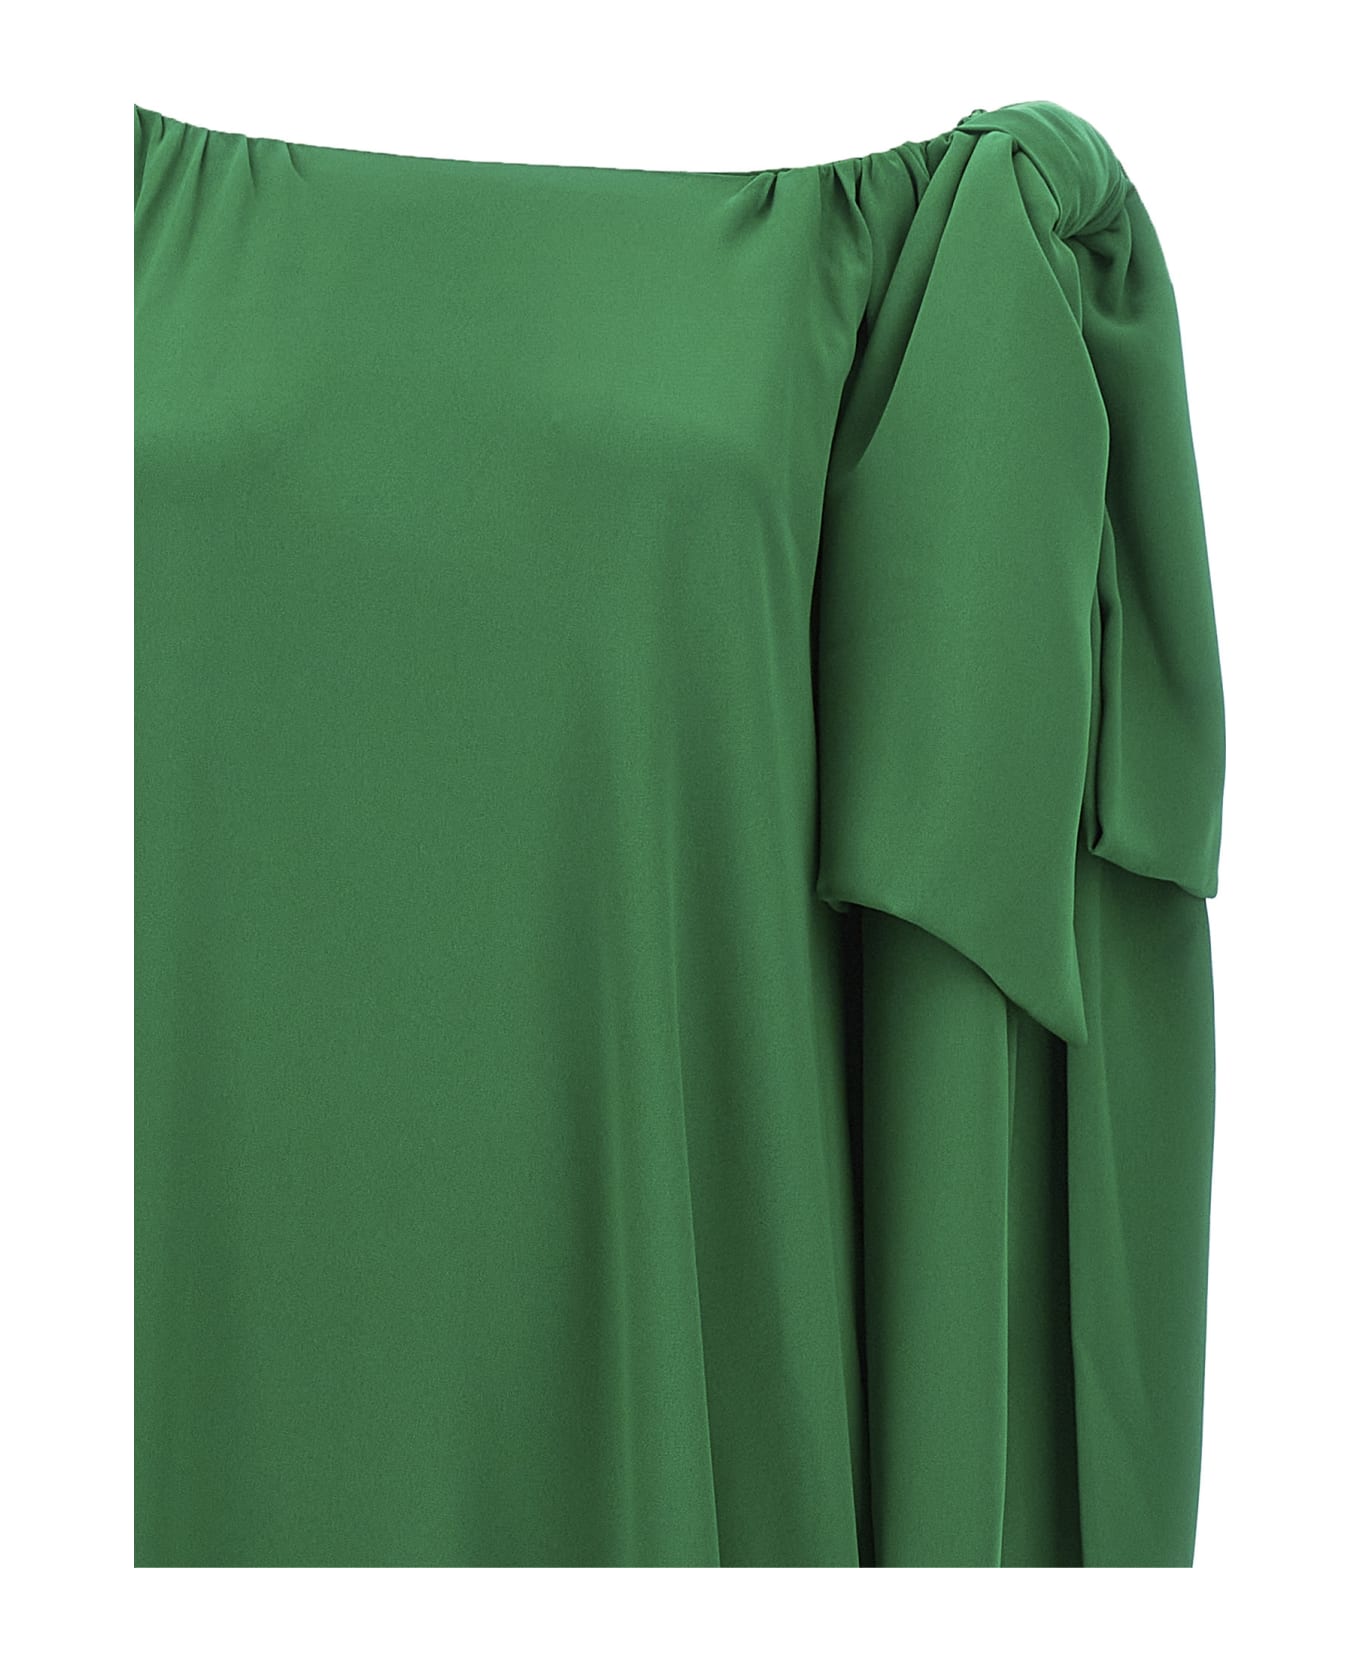 Bernadette 'ninouk' Dress - Green